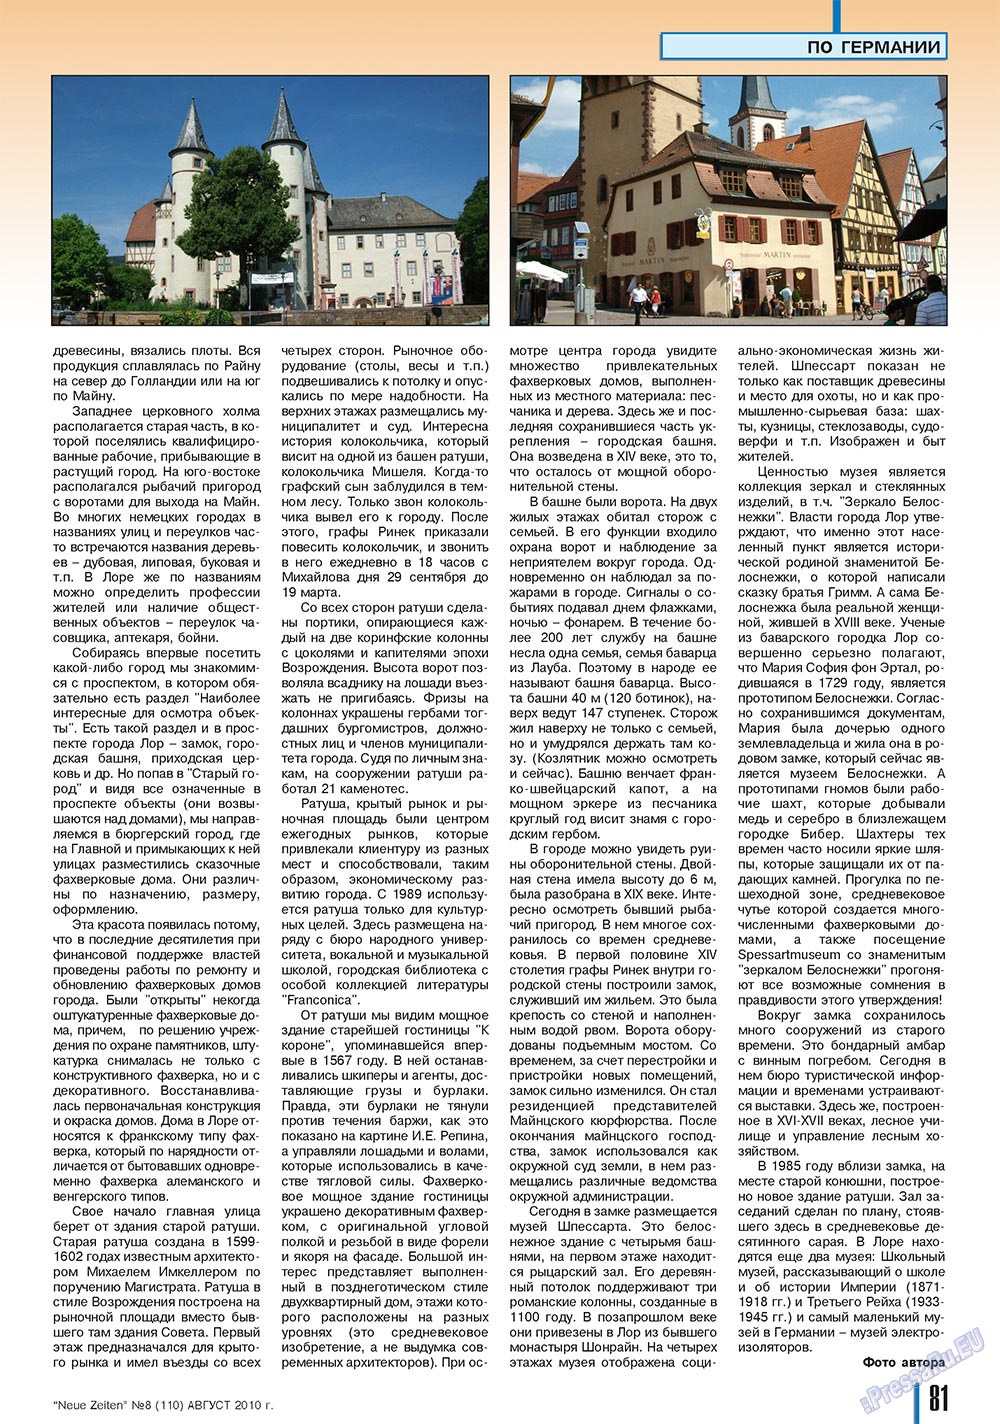 Neue Zeiten, журнал. 2010 №8 стр.81